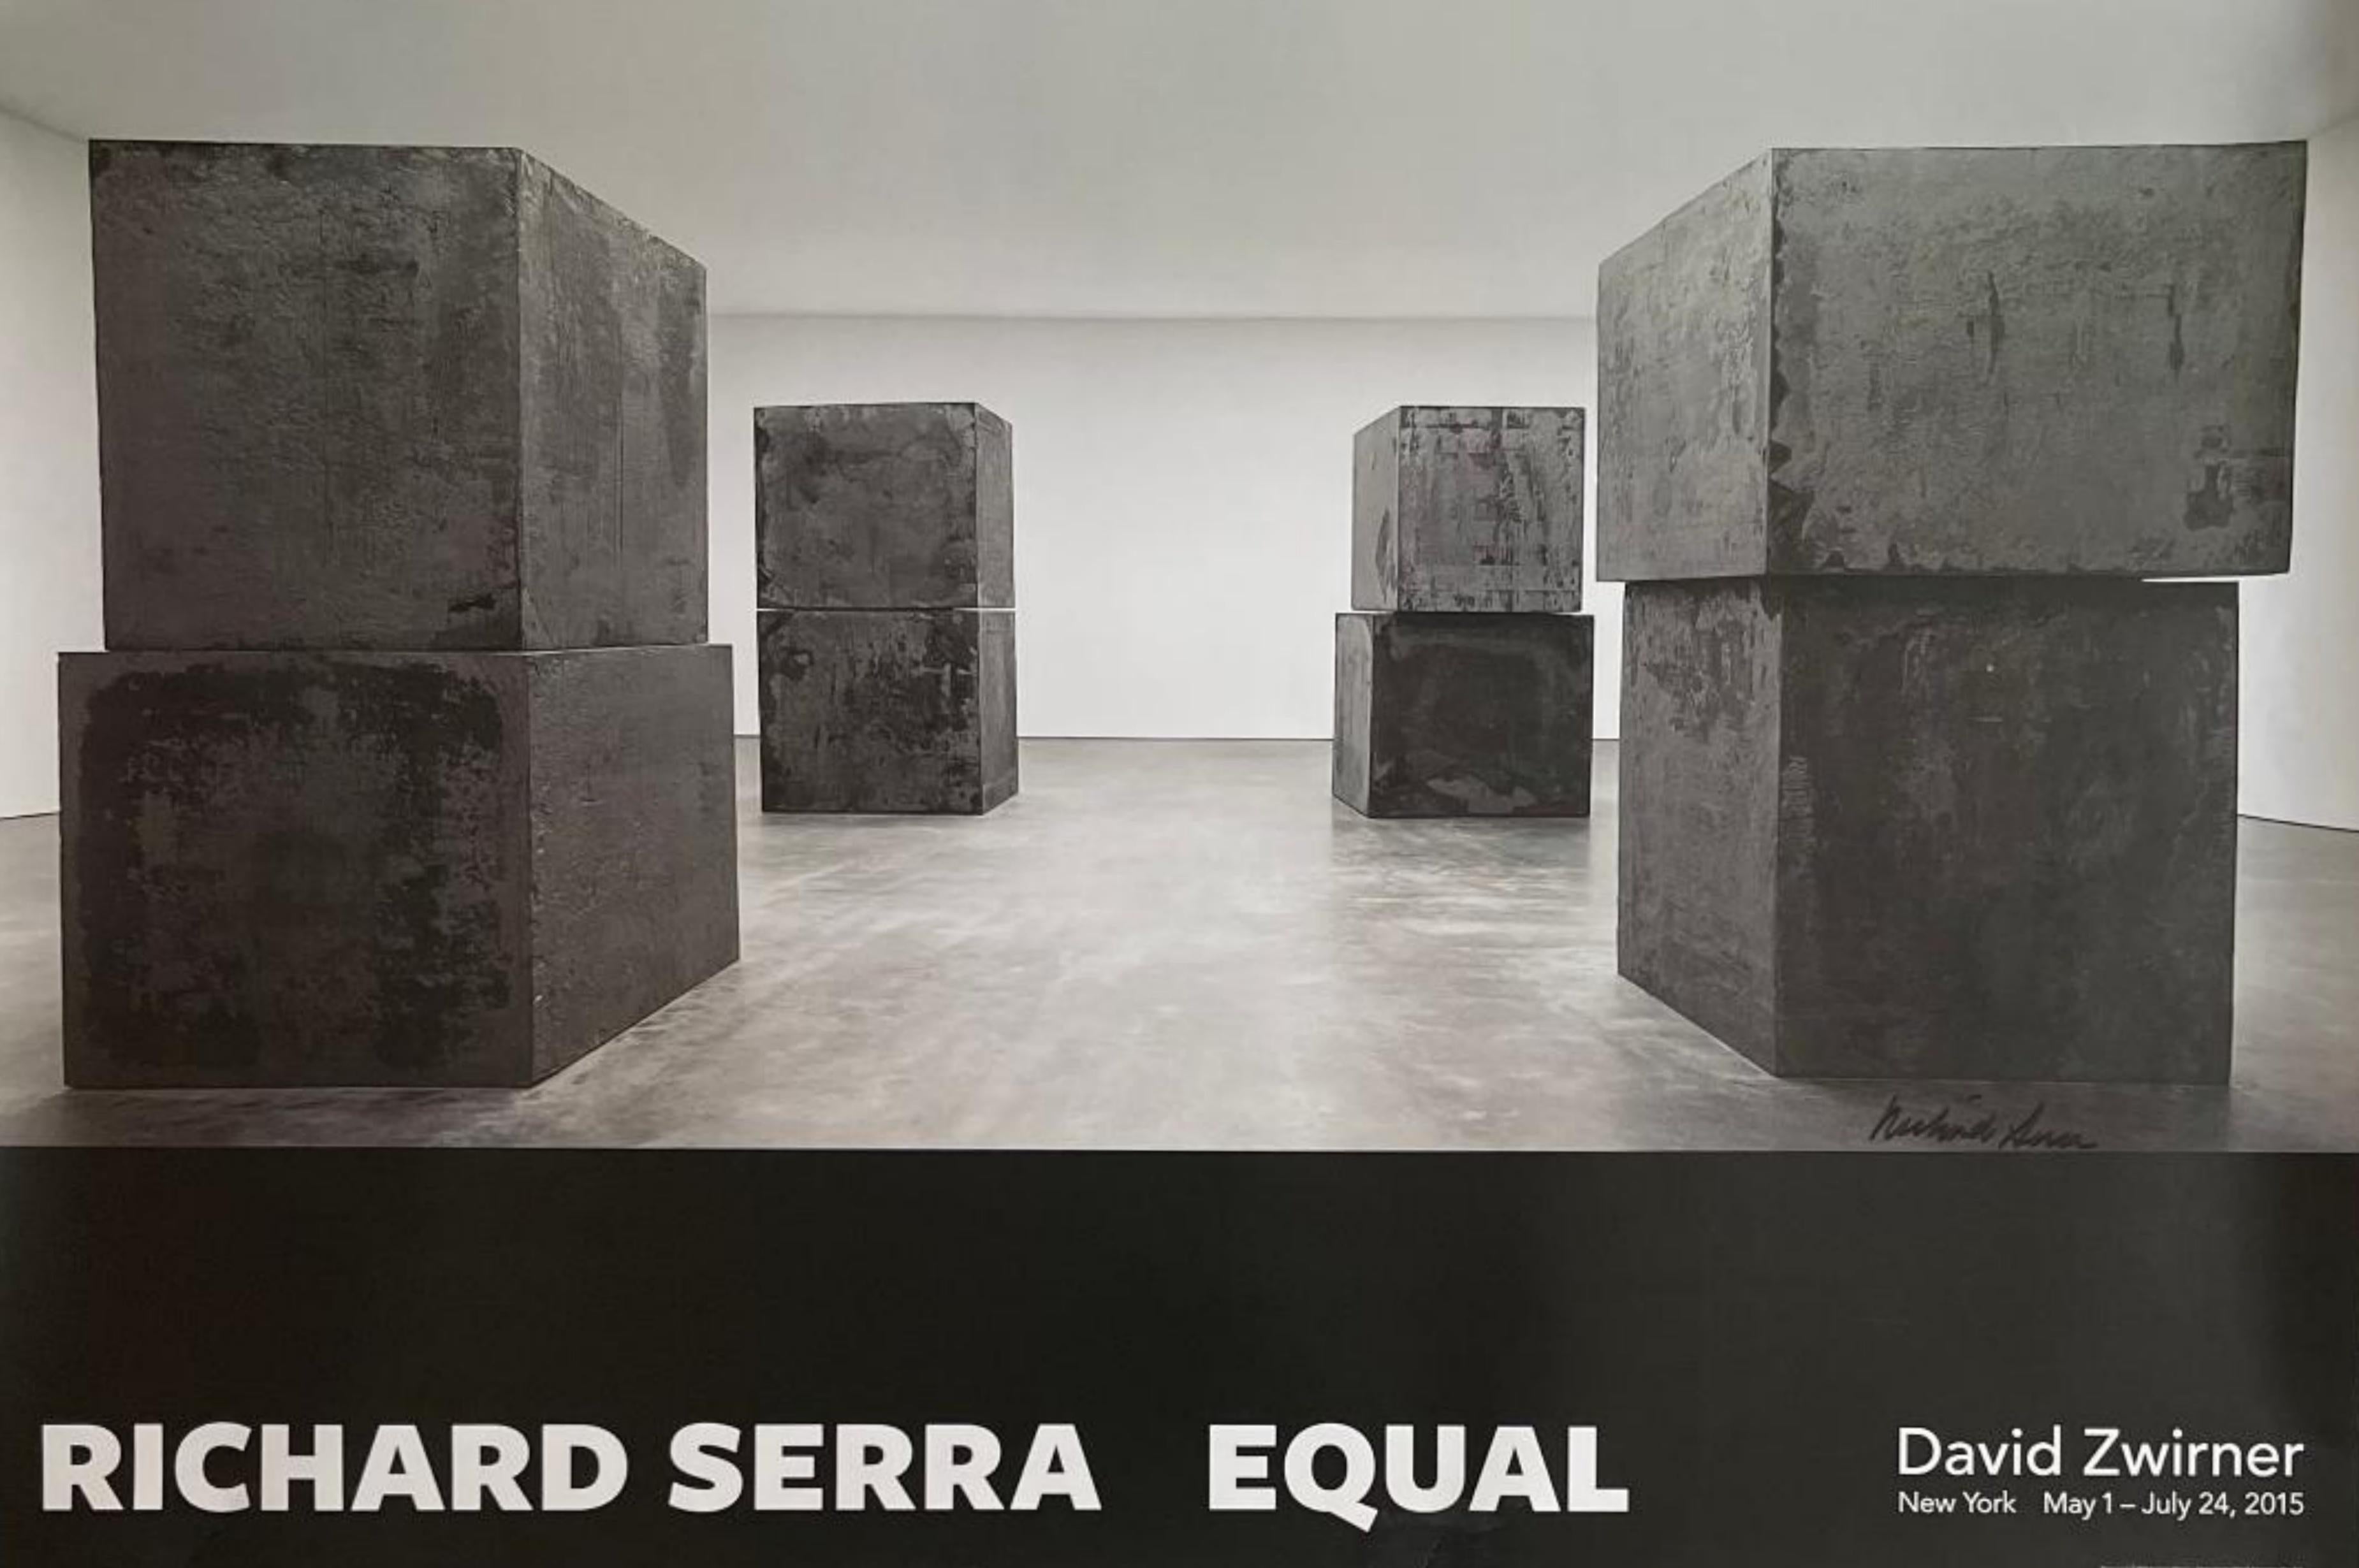 Richard Serra, Equal, 2015 (signé à la main)
Affiche lithographique offset (signée par Richard Serra)
Signé au marqueur noir au recto.
Publié par David Zwirner ; Conçu par McCall Associates
24 × 36 pouces
Non encadré
Acquis auprès de la David